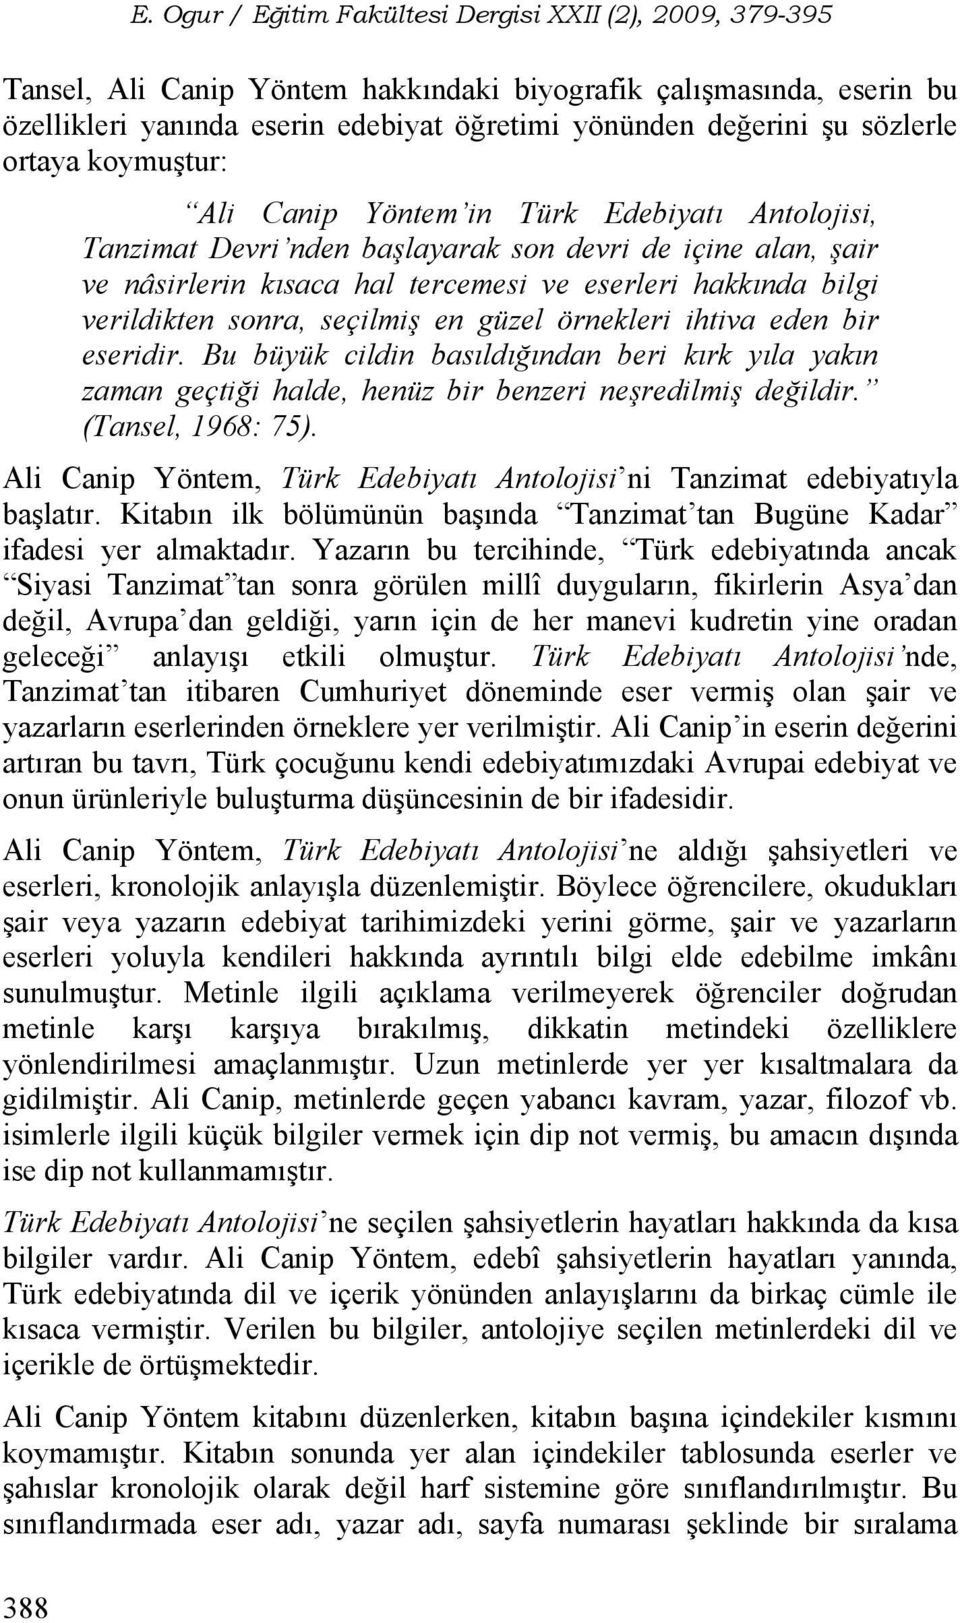 sözlerle ortaya koymuştur: Ali Canip Yöntem in Türk Edebiyatı Antolojisi, Tanzimat Devri nden başlayarak son devri de içine alan, şair ve nâsirlerin kısaca hal tercemesi ve eserleri hakkında bilgi